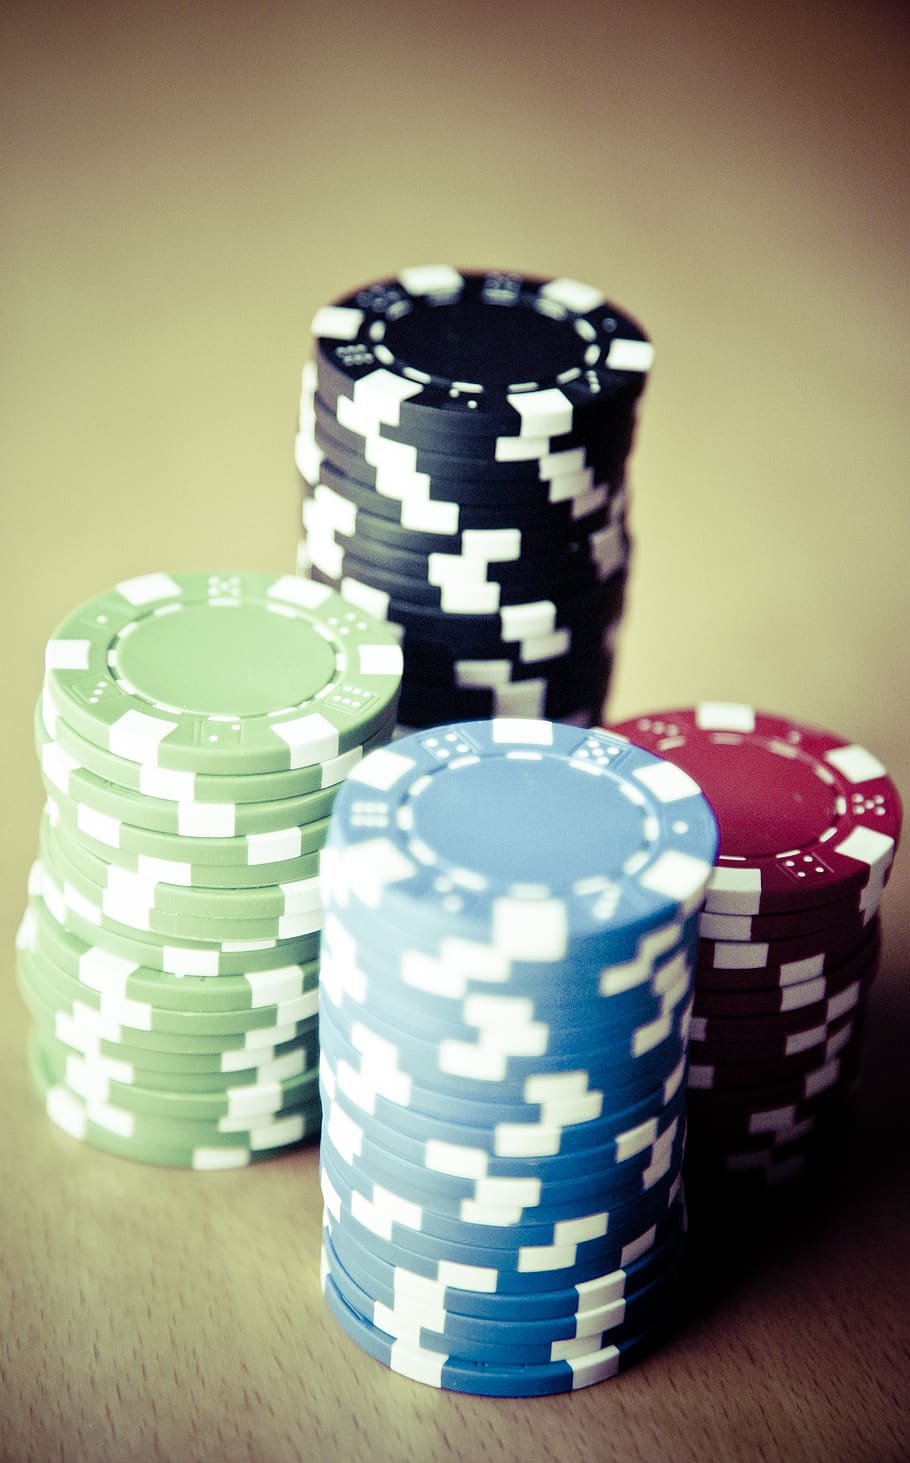 pôquer, fichas, jogos de azar, cassino, lucro, jogo de pôquer, jogar, cartões, vitória, jogo de cartas